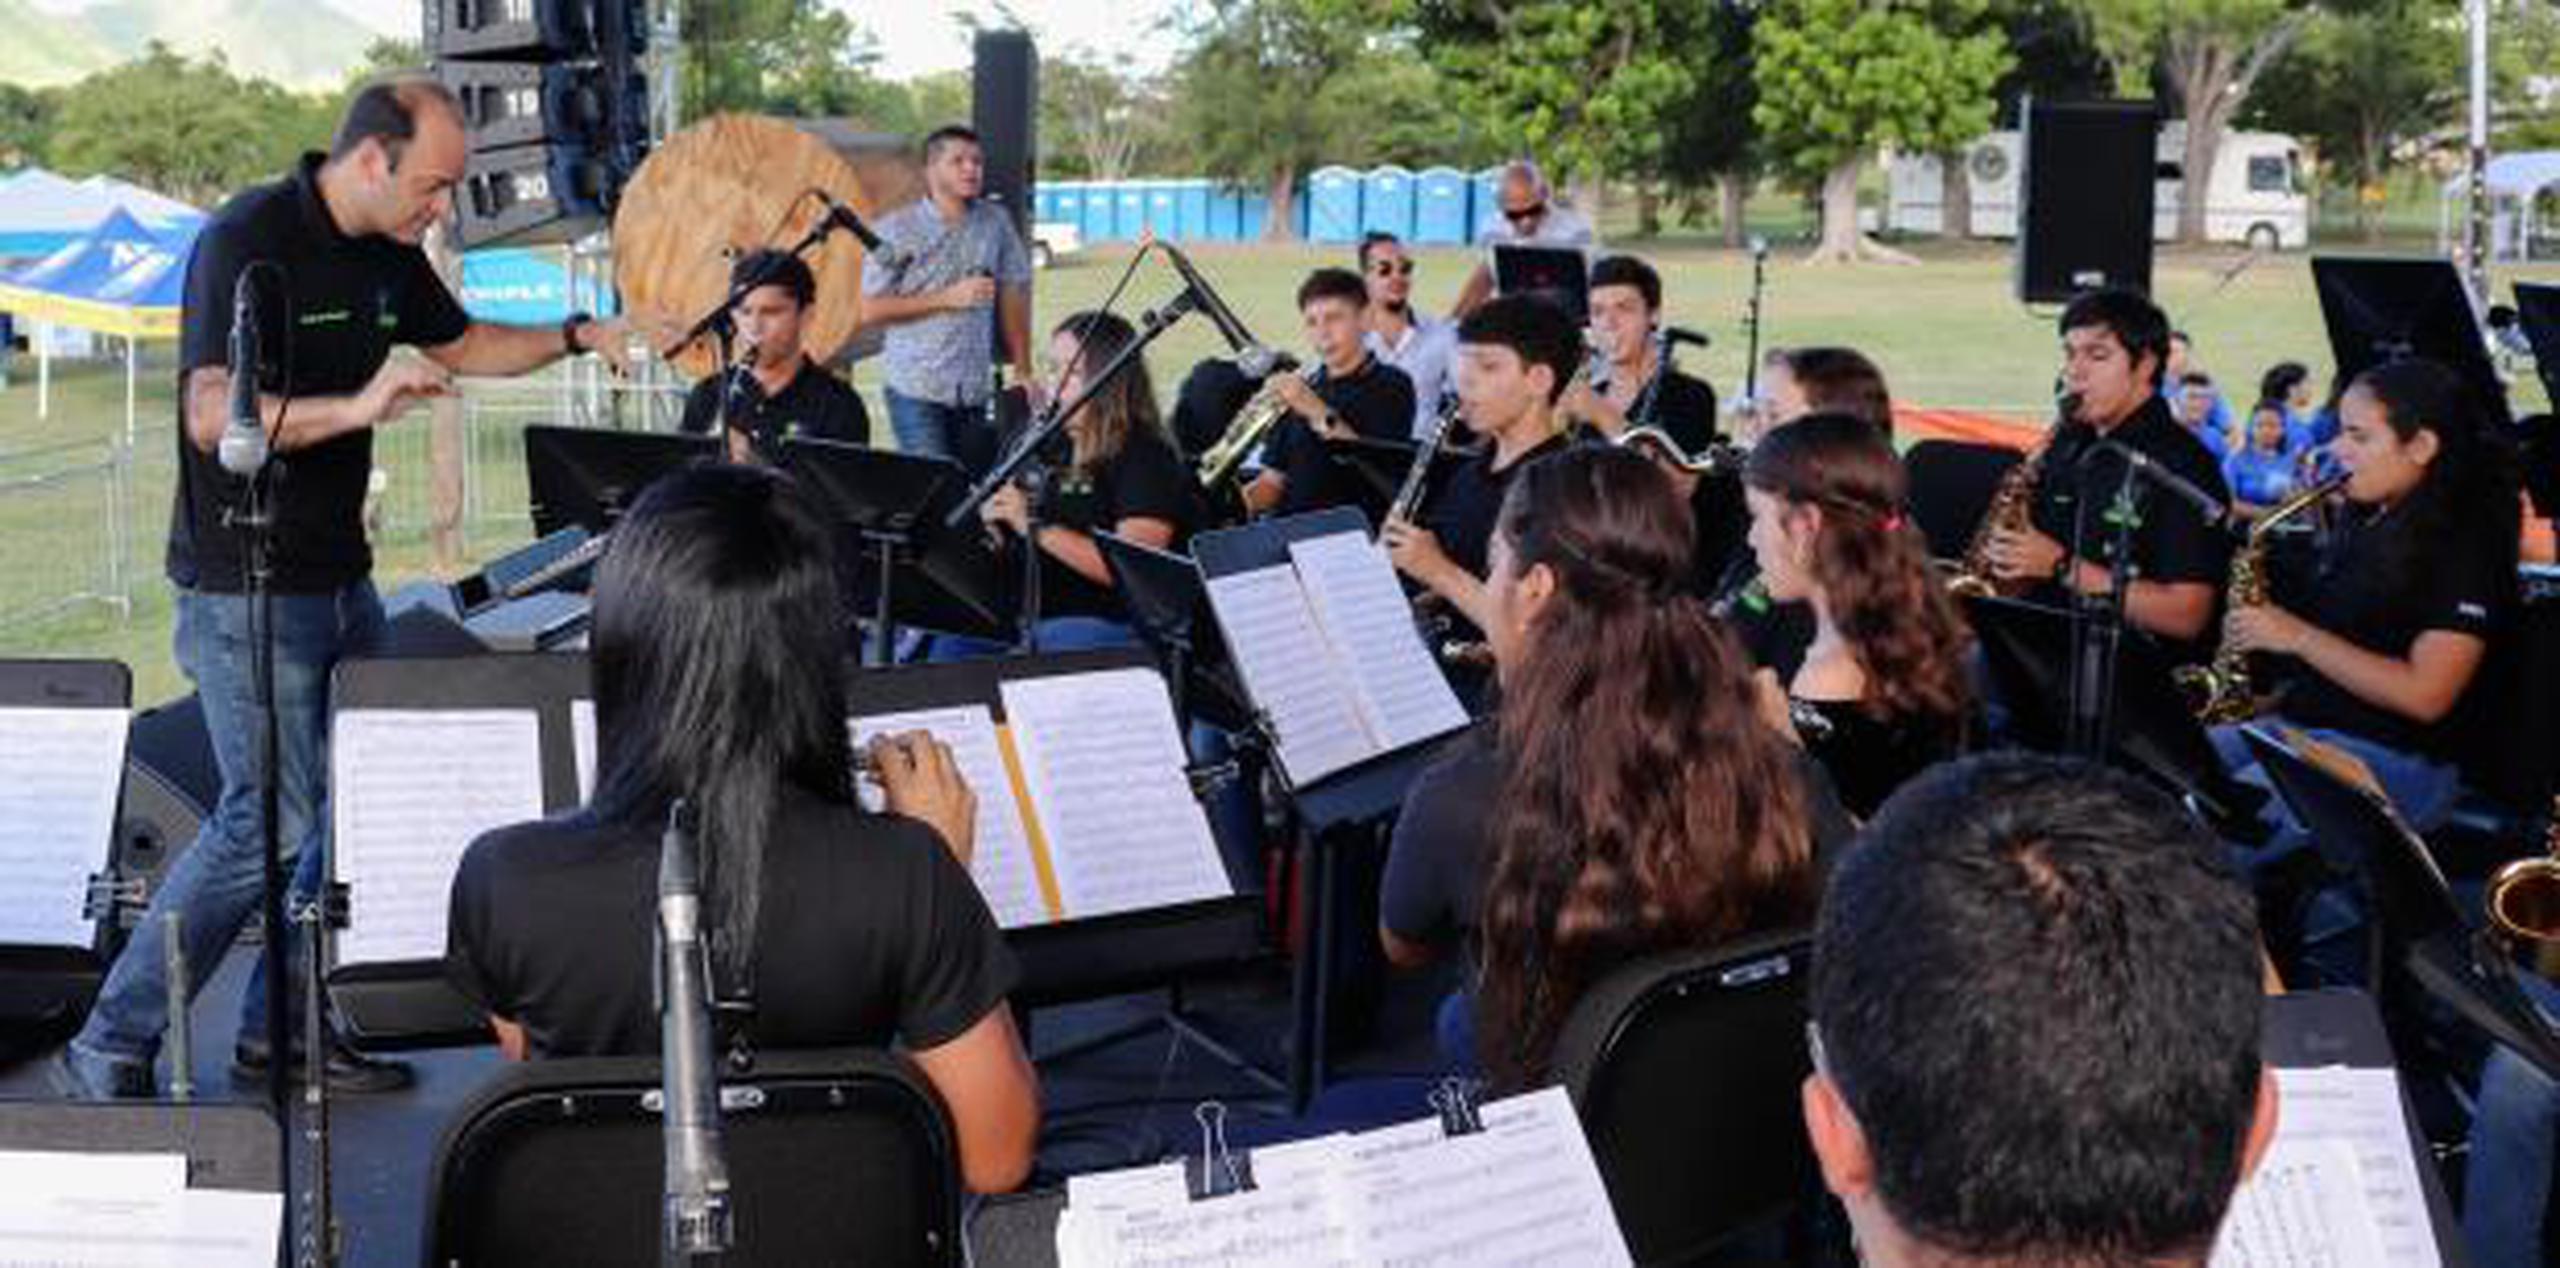 La competencia de bandas contó con la participación de siete grupos escolares de los pueblos de Yauco, Ponce, Cidra, Caguas, Mayagüez, San Juan y Arecibo. (Suministrada)